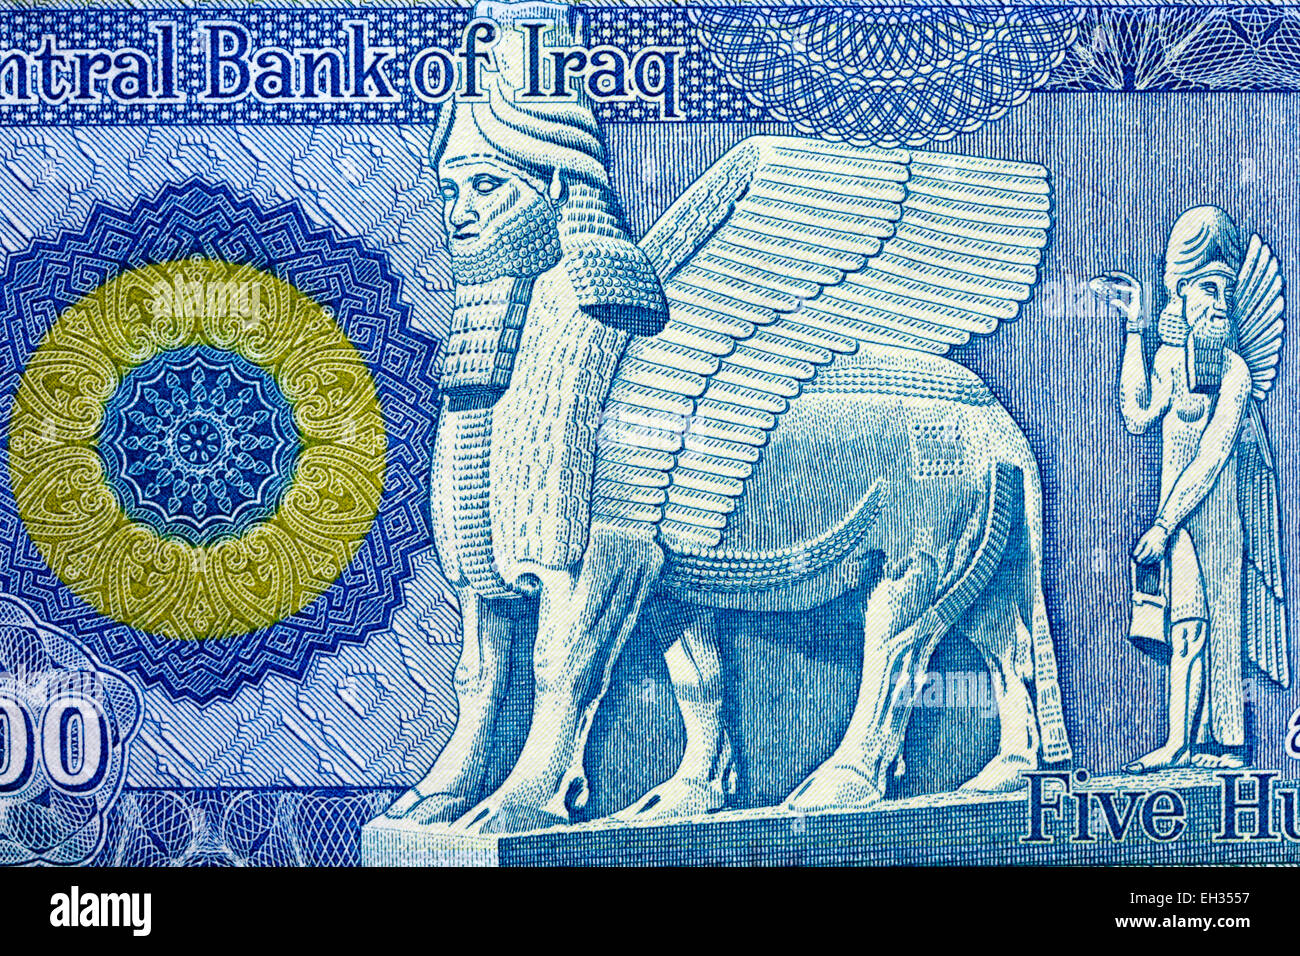 Assyrer, mesopotamischen geflügelten Stier Shedu von 500 Dinar Banknote, Irak, 2004 Stockfoto